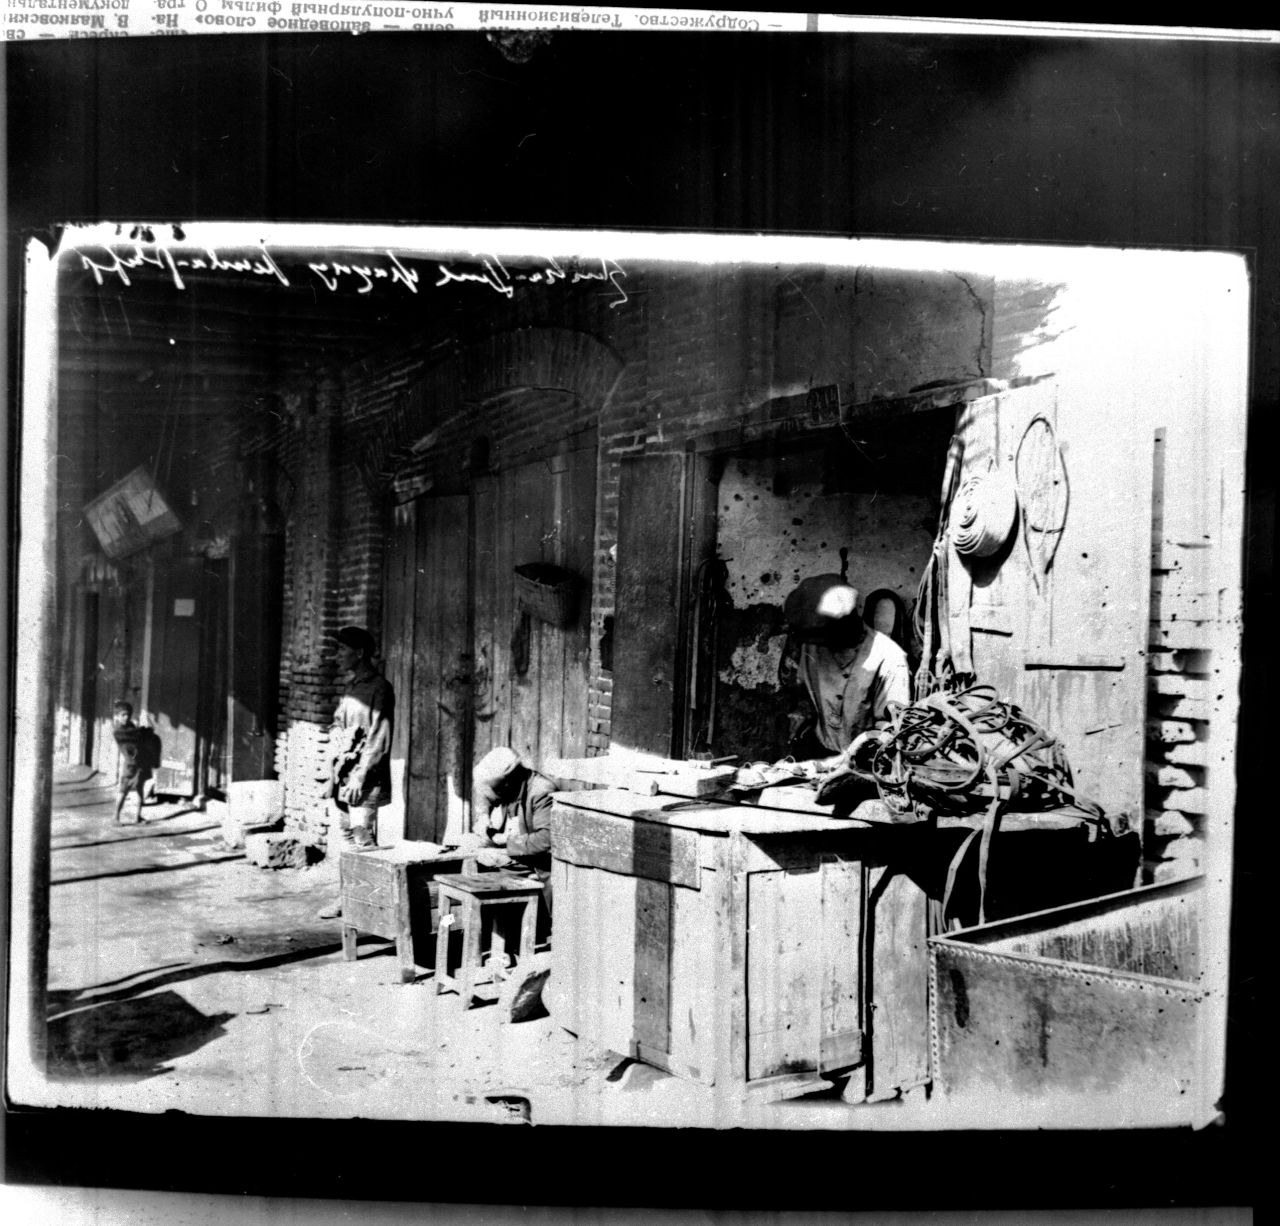 Երևանի հին շուկայի արհեստավորական կրպակներից